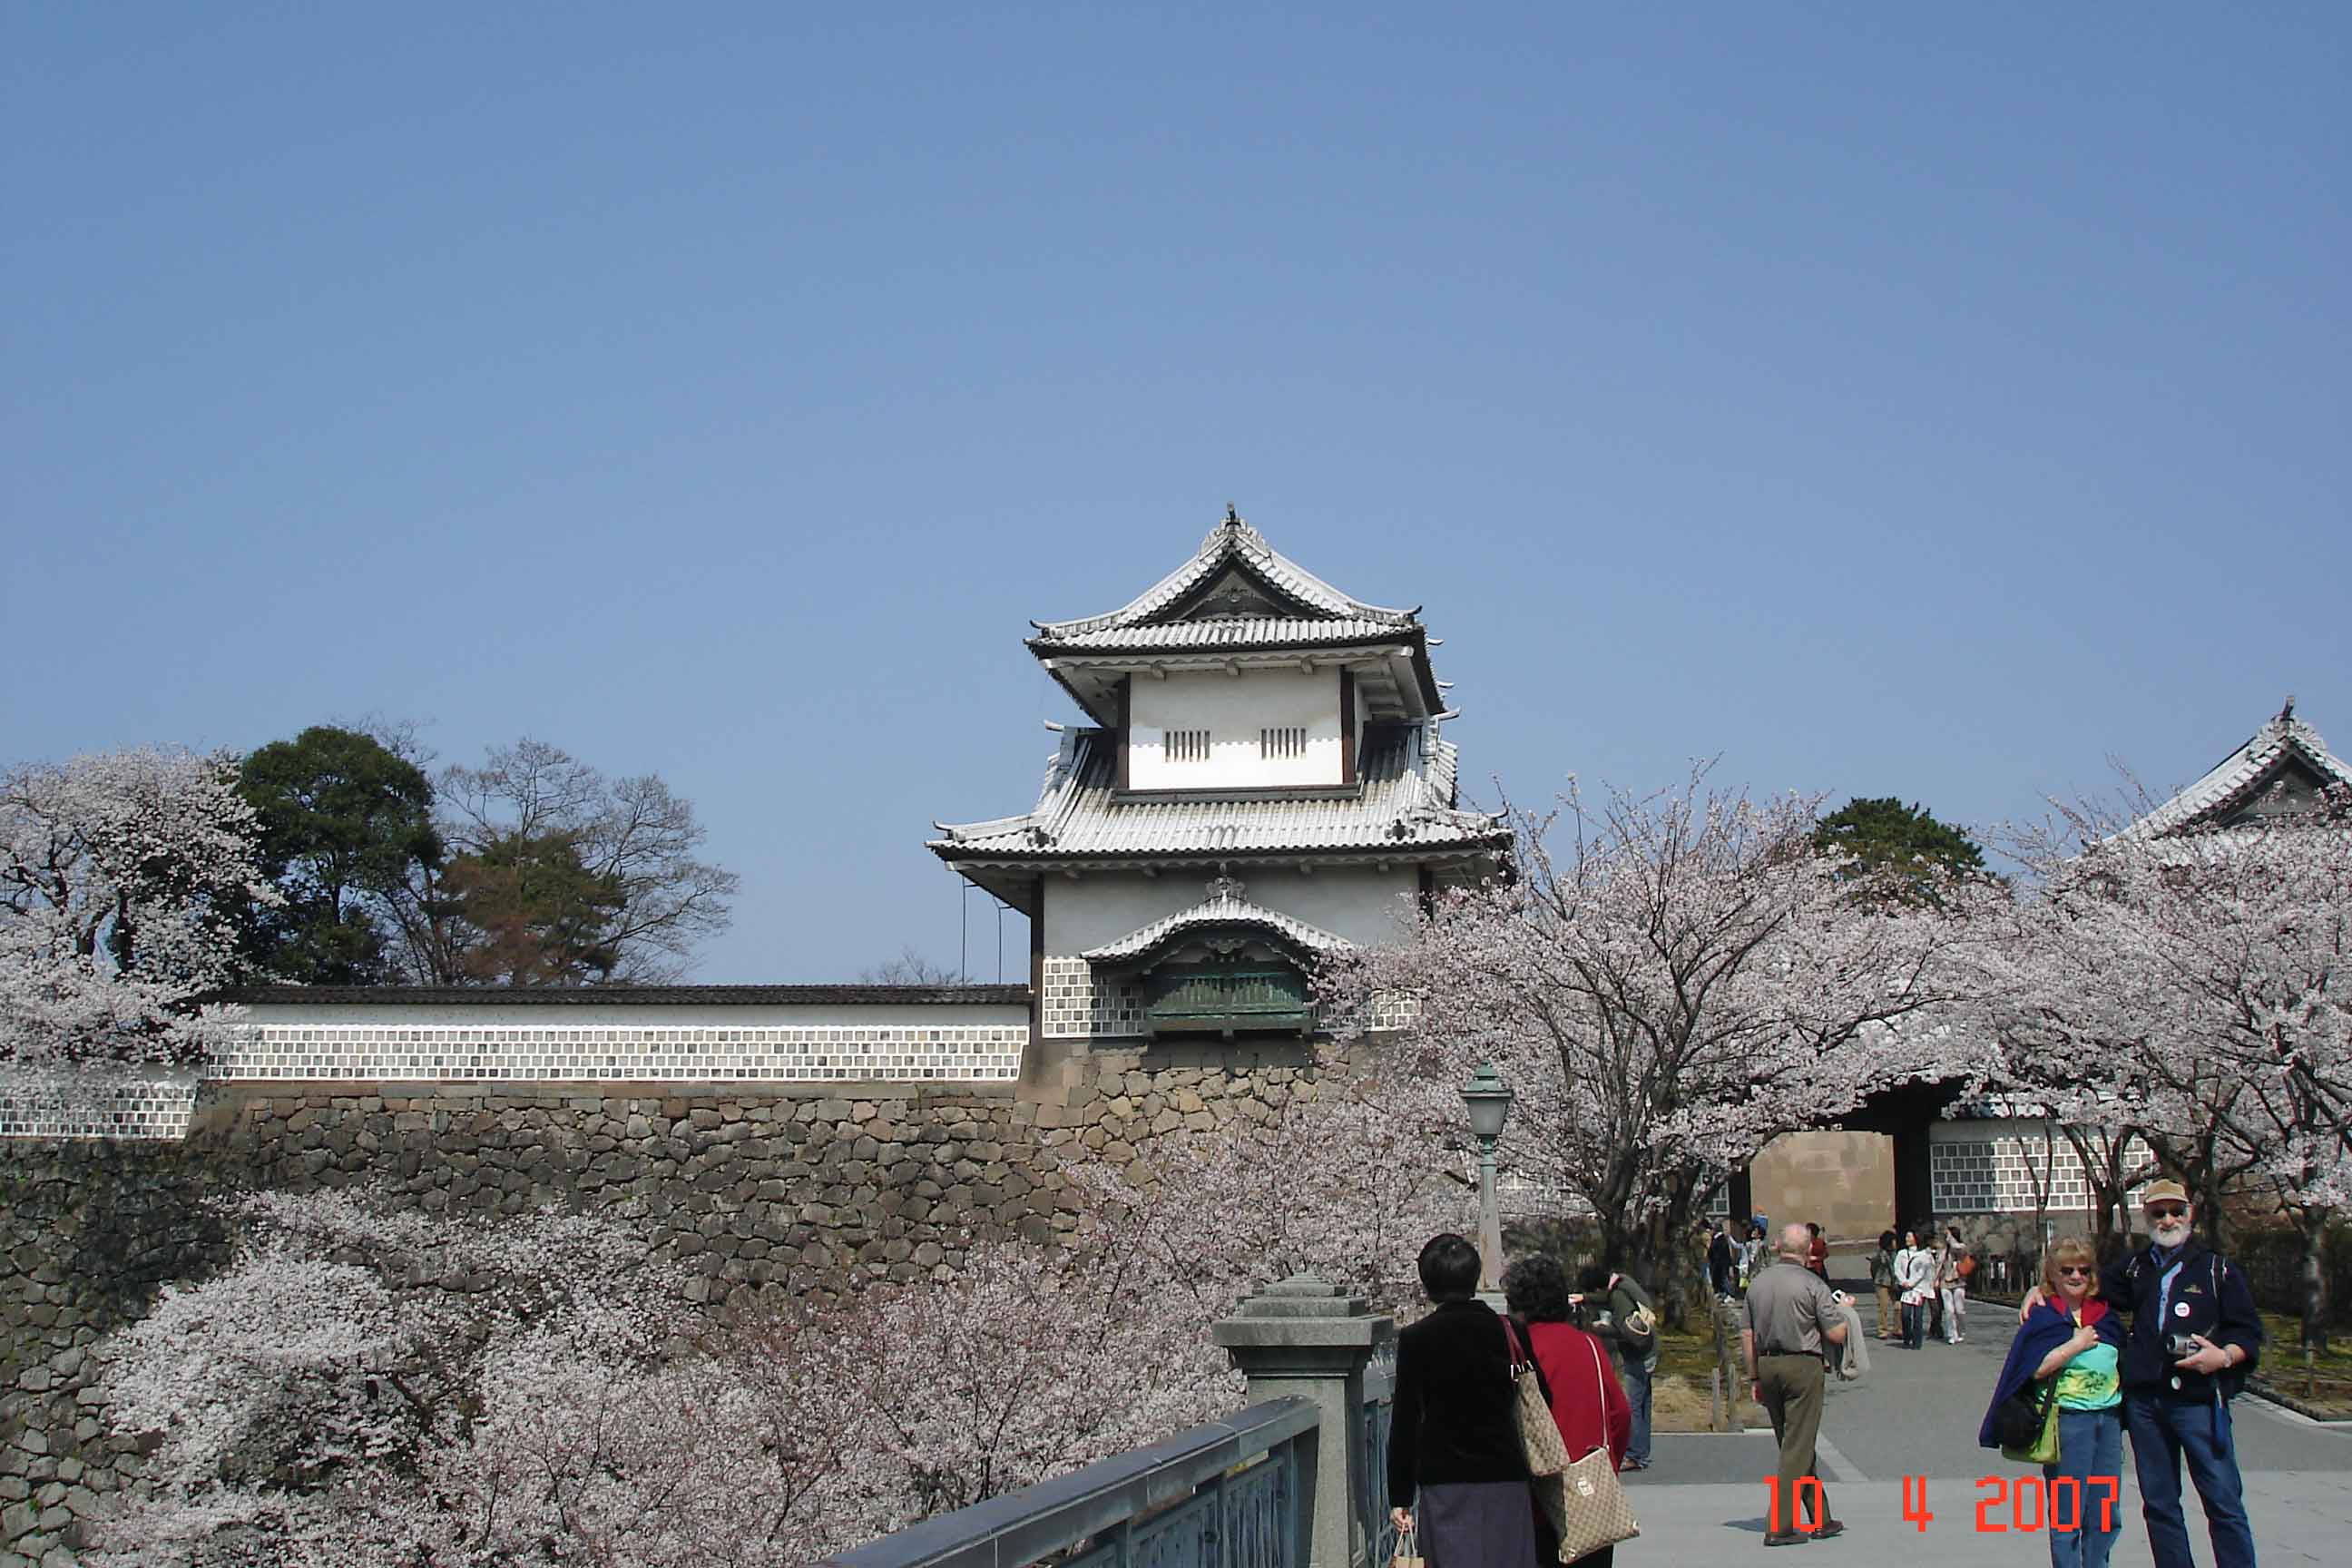  Ishikawa-mon Gate - Entrance gate to Kanazawa Castle